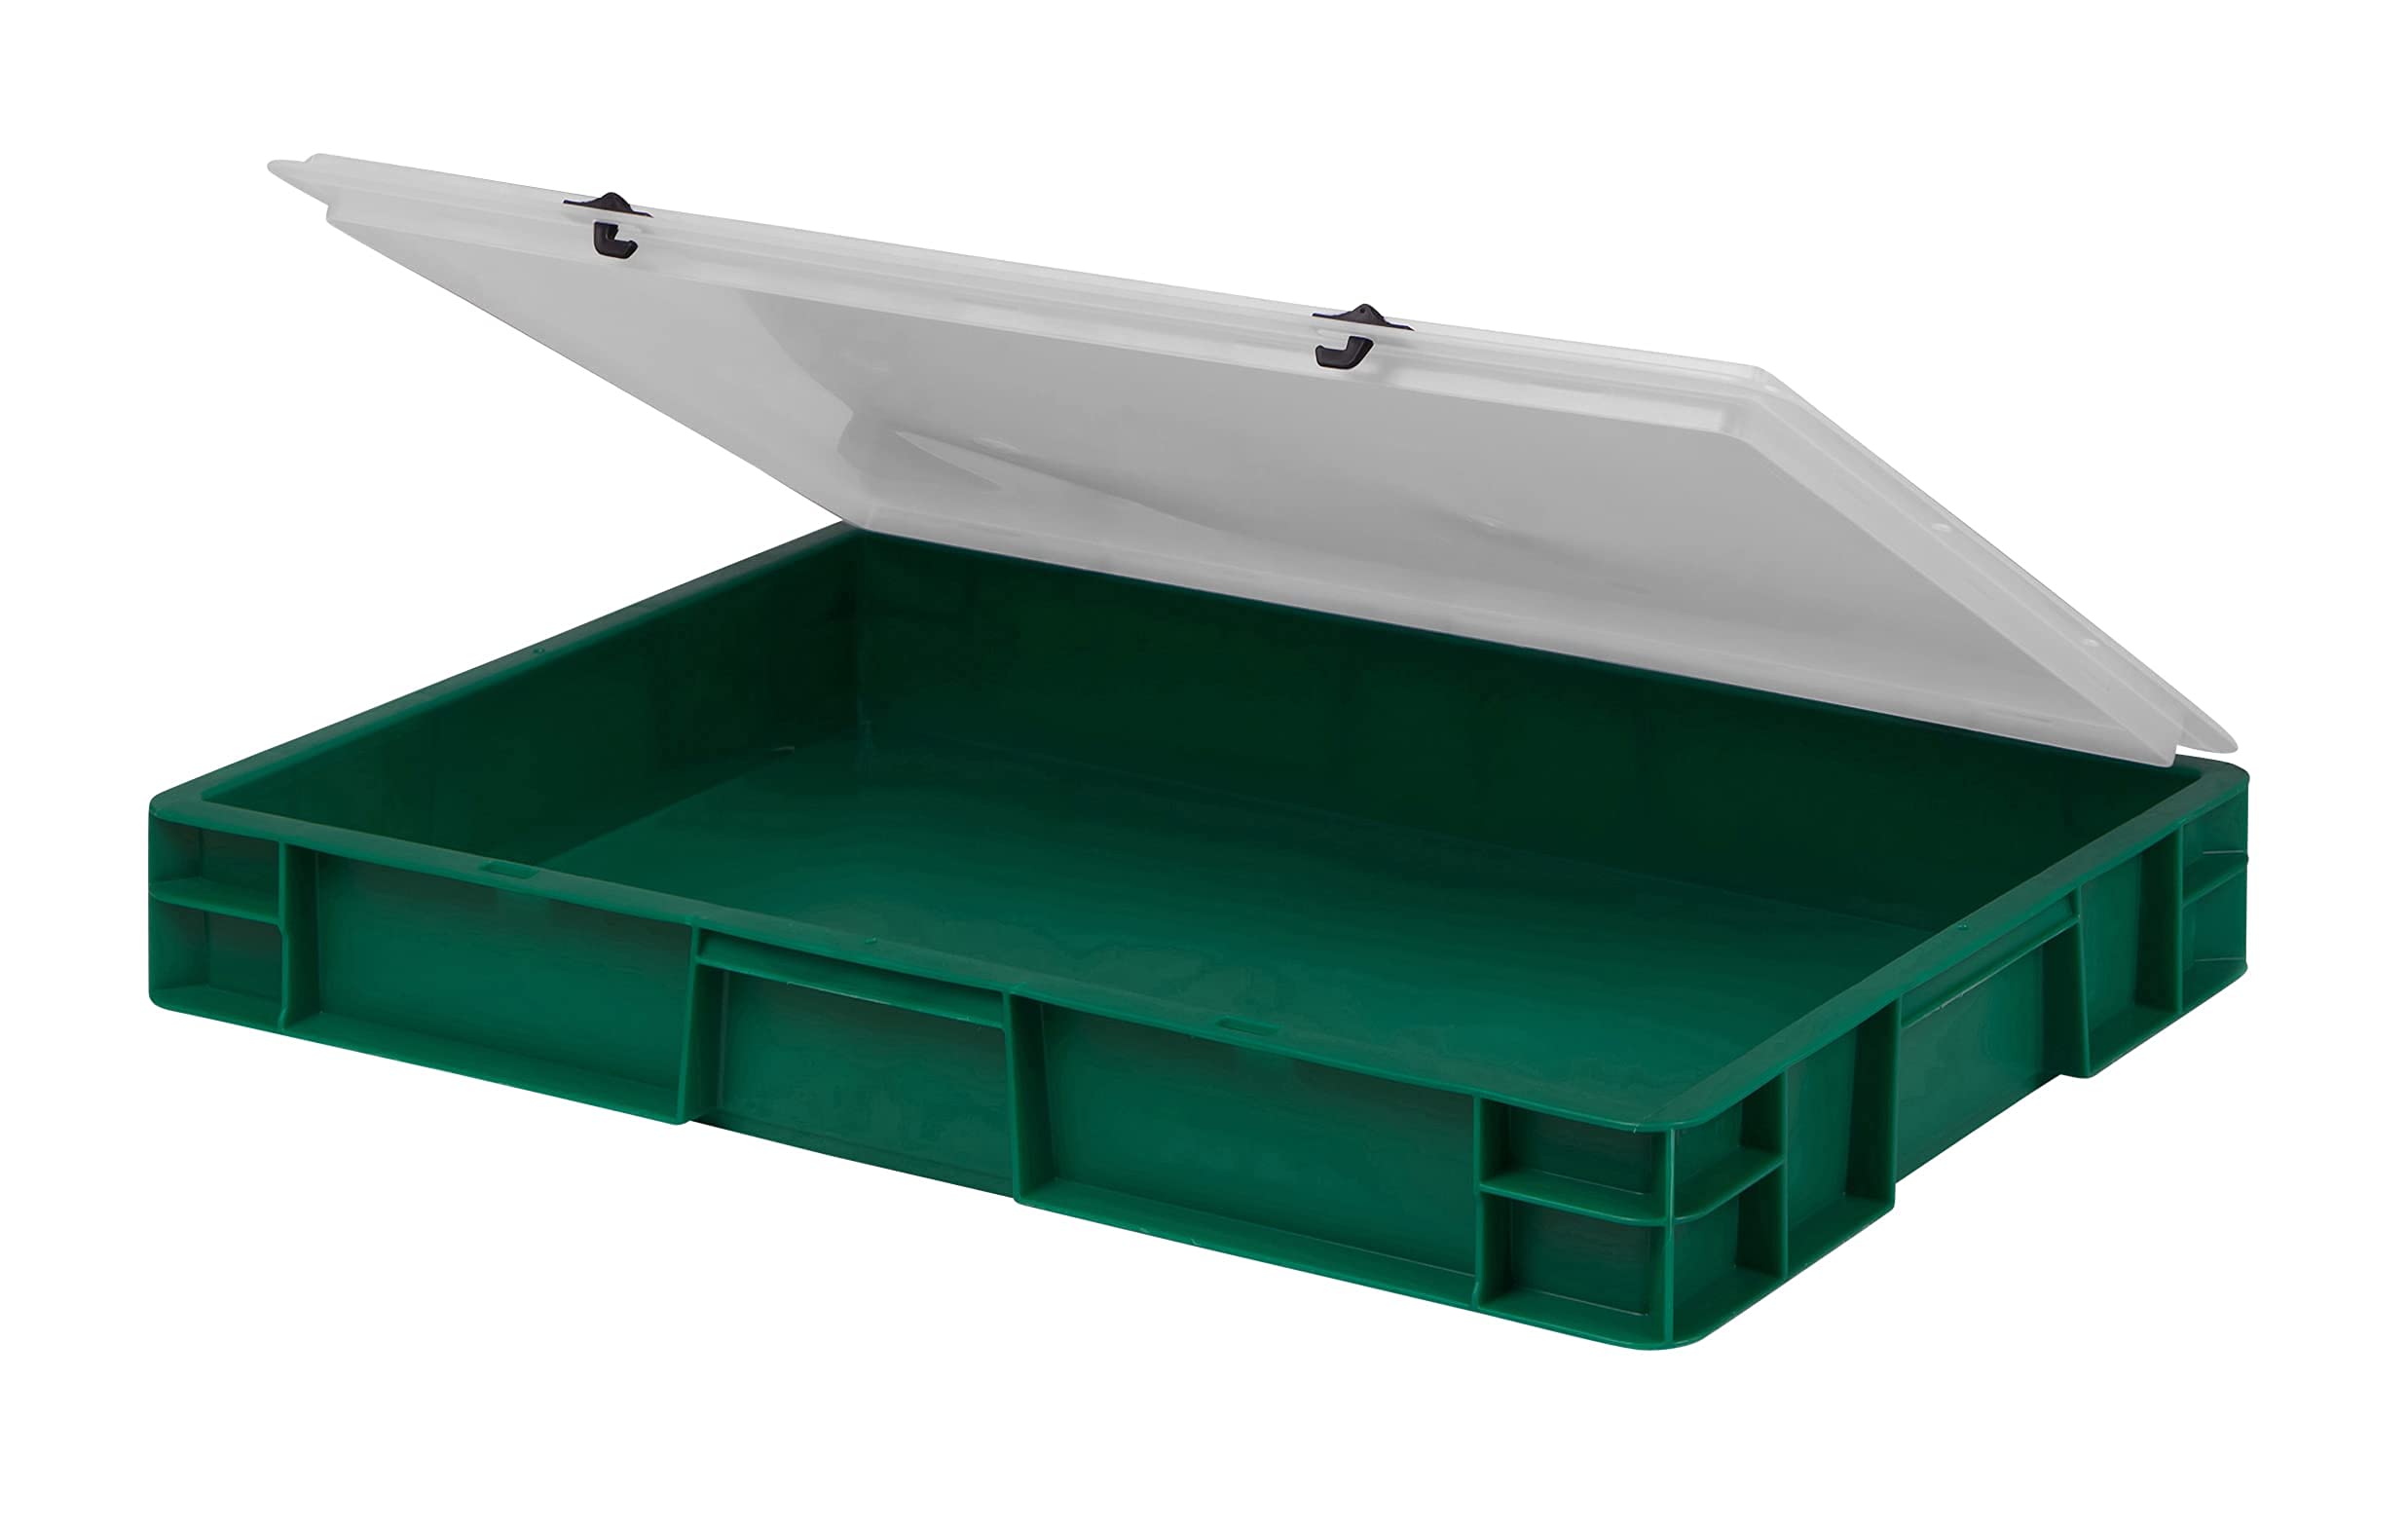 1a-TopStore Design Eurobox Stapelbox Lagerbehälter Kunststoffbox in 5 Farben und 16 Größen mit transparentem Deckel (matt) (grün, 60x40x6 cm)